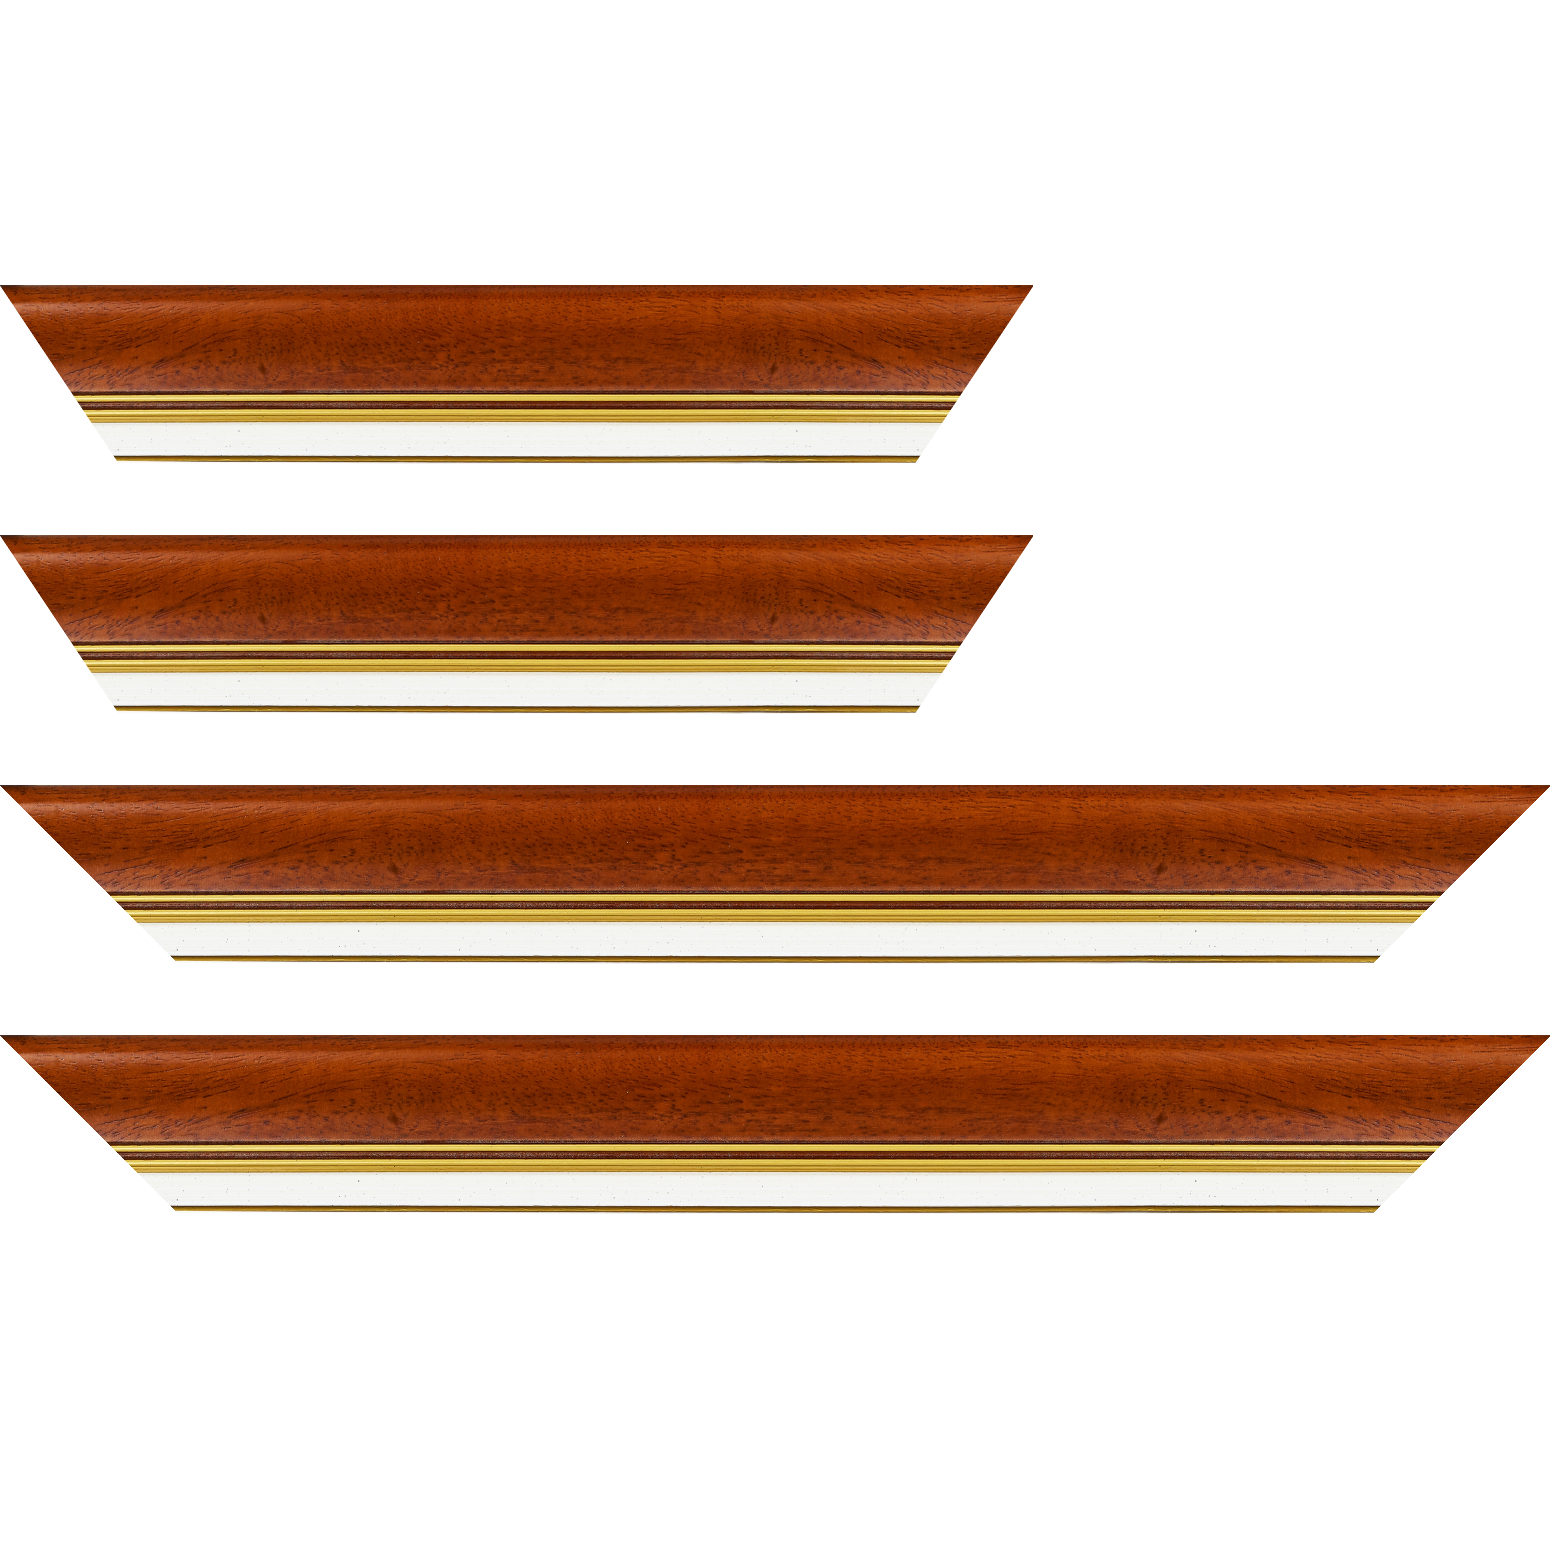 Baguette bois profil incurvé largeur 5.7cm de couleur marron ton bois marie louise blanche mouchetée filet or intégré - 70x100